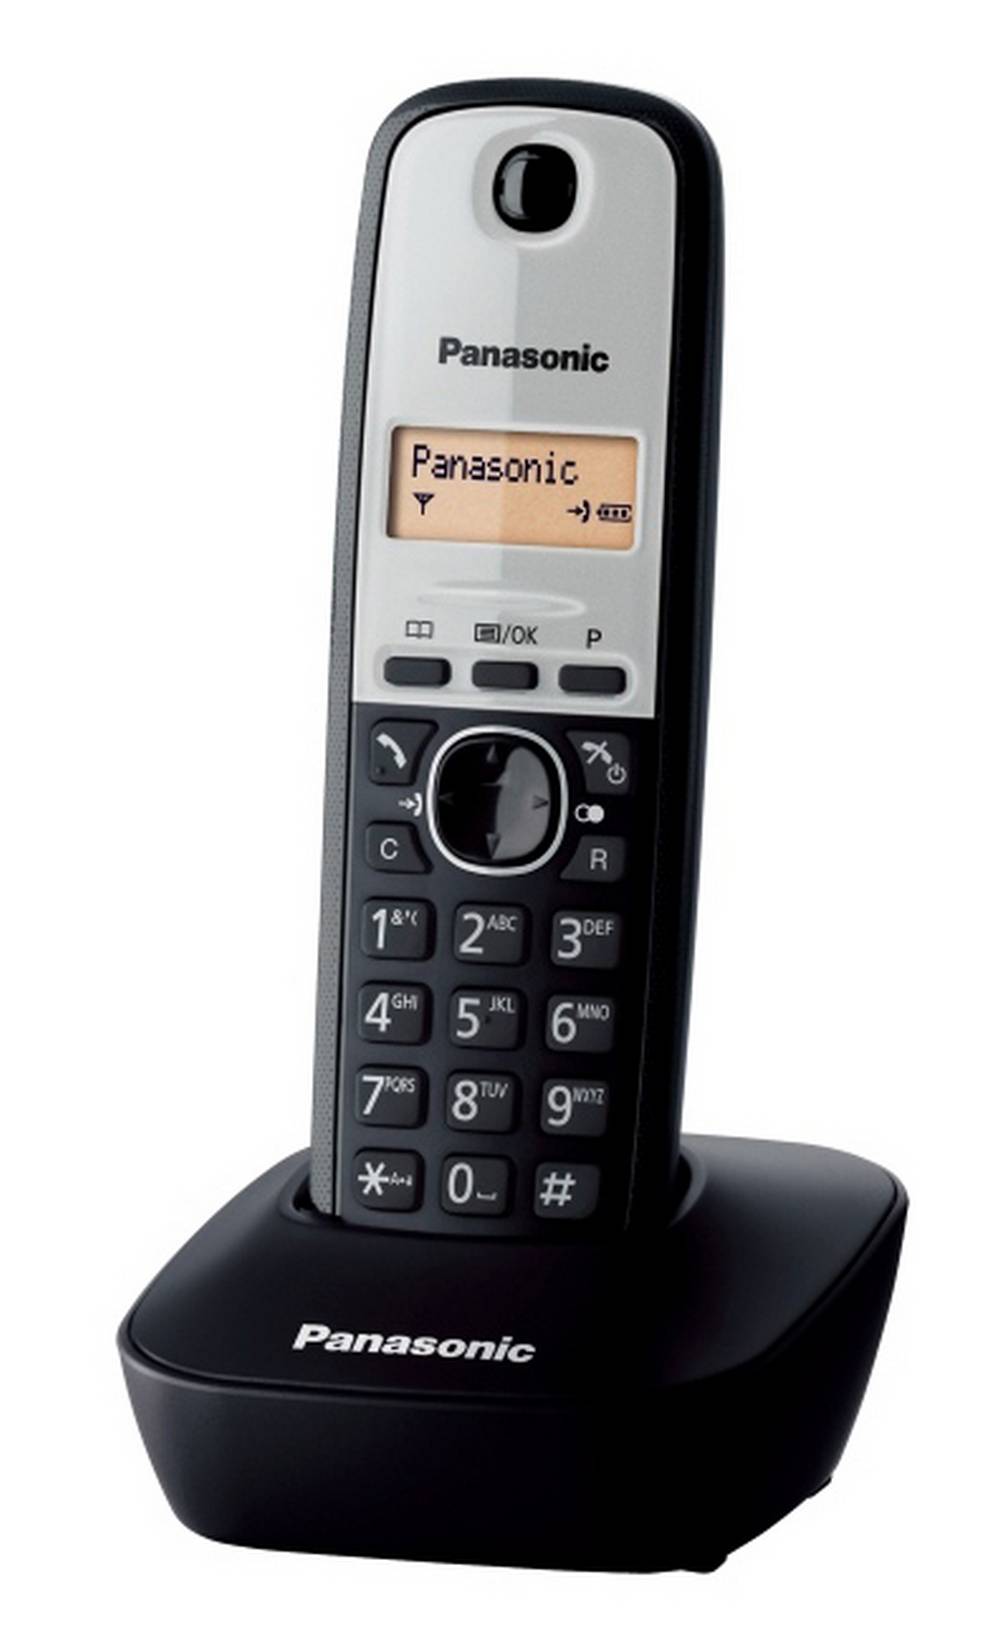 Ασύρματο Ψηφιακό Τηλέφωνο Panasonic KX-TG1611GRG Μαύρο-Ασημί